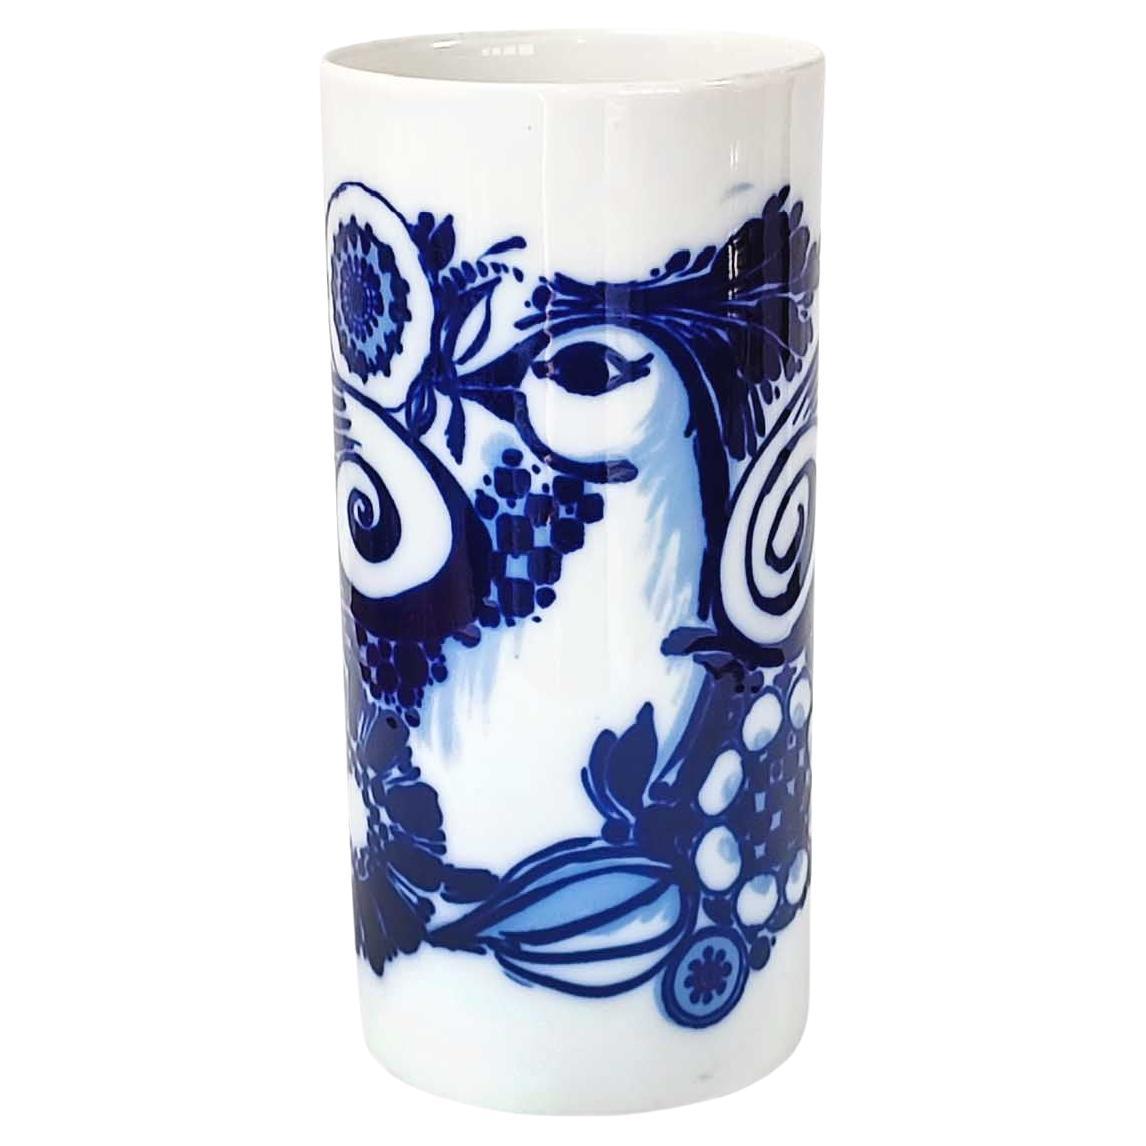 Bjorn Wiinblad for Rosenthal Studio Line, Porcelain Vase